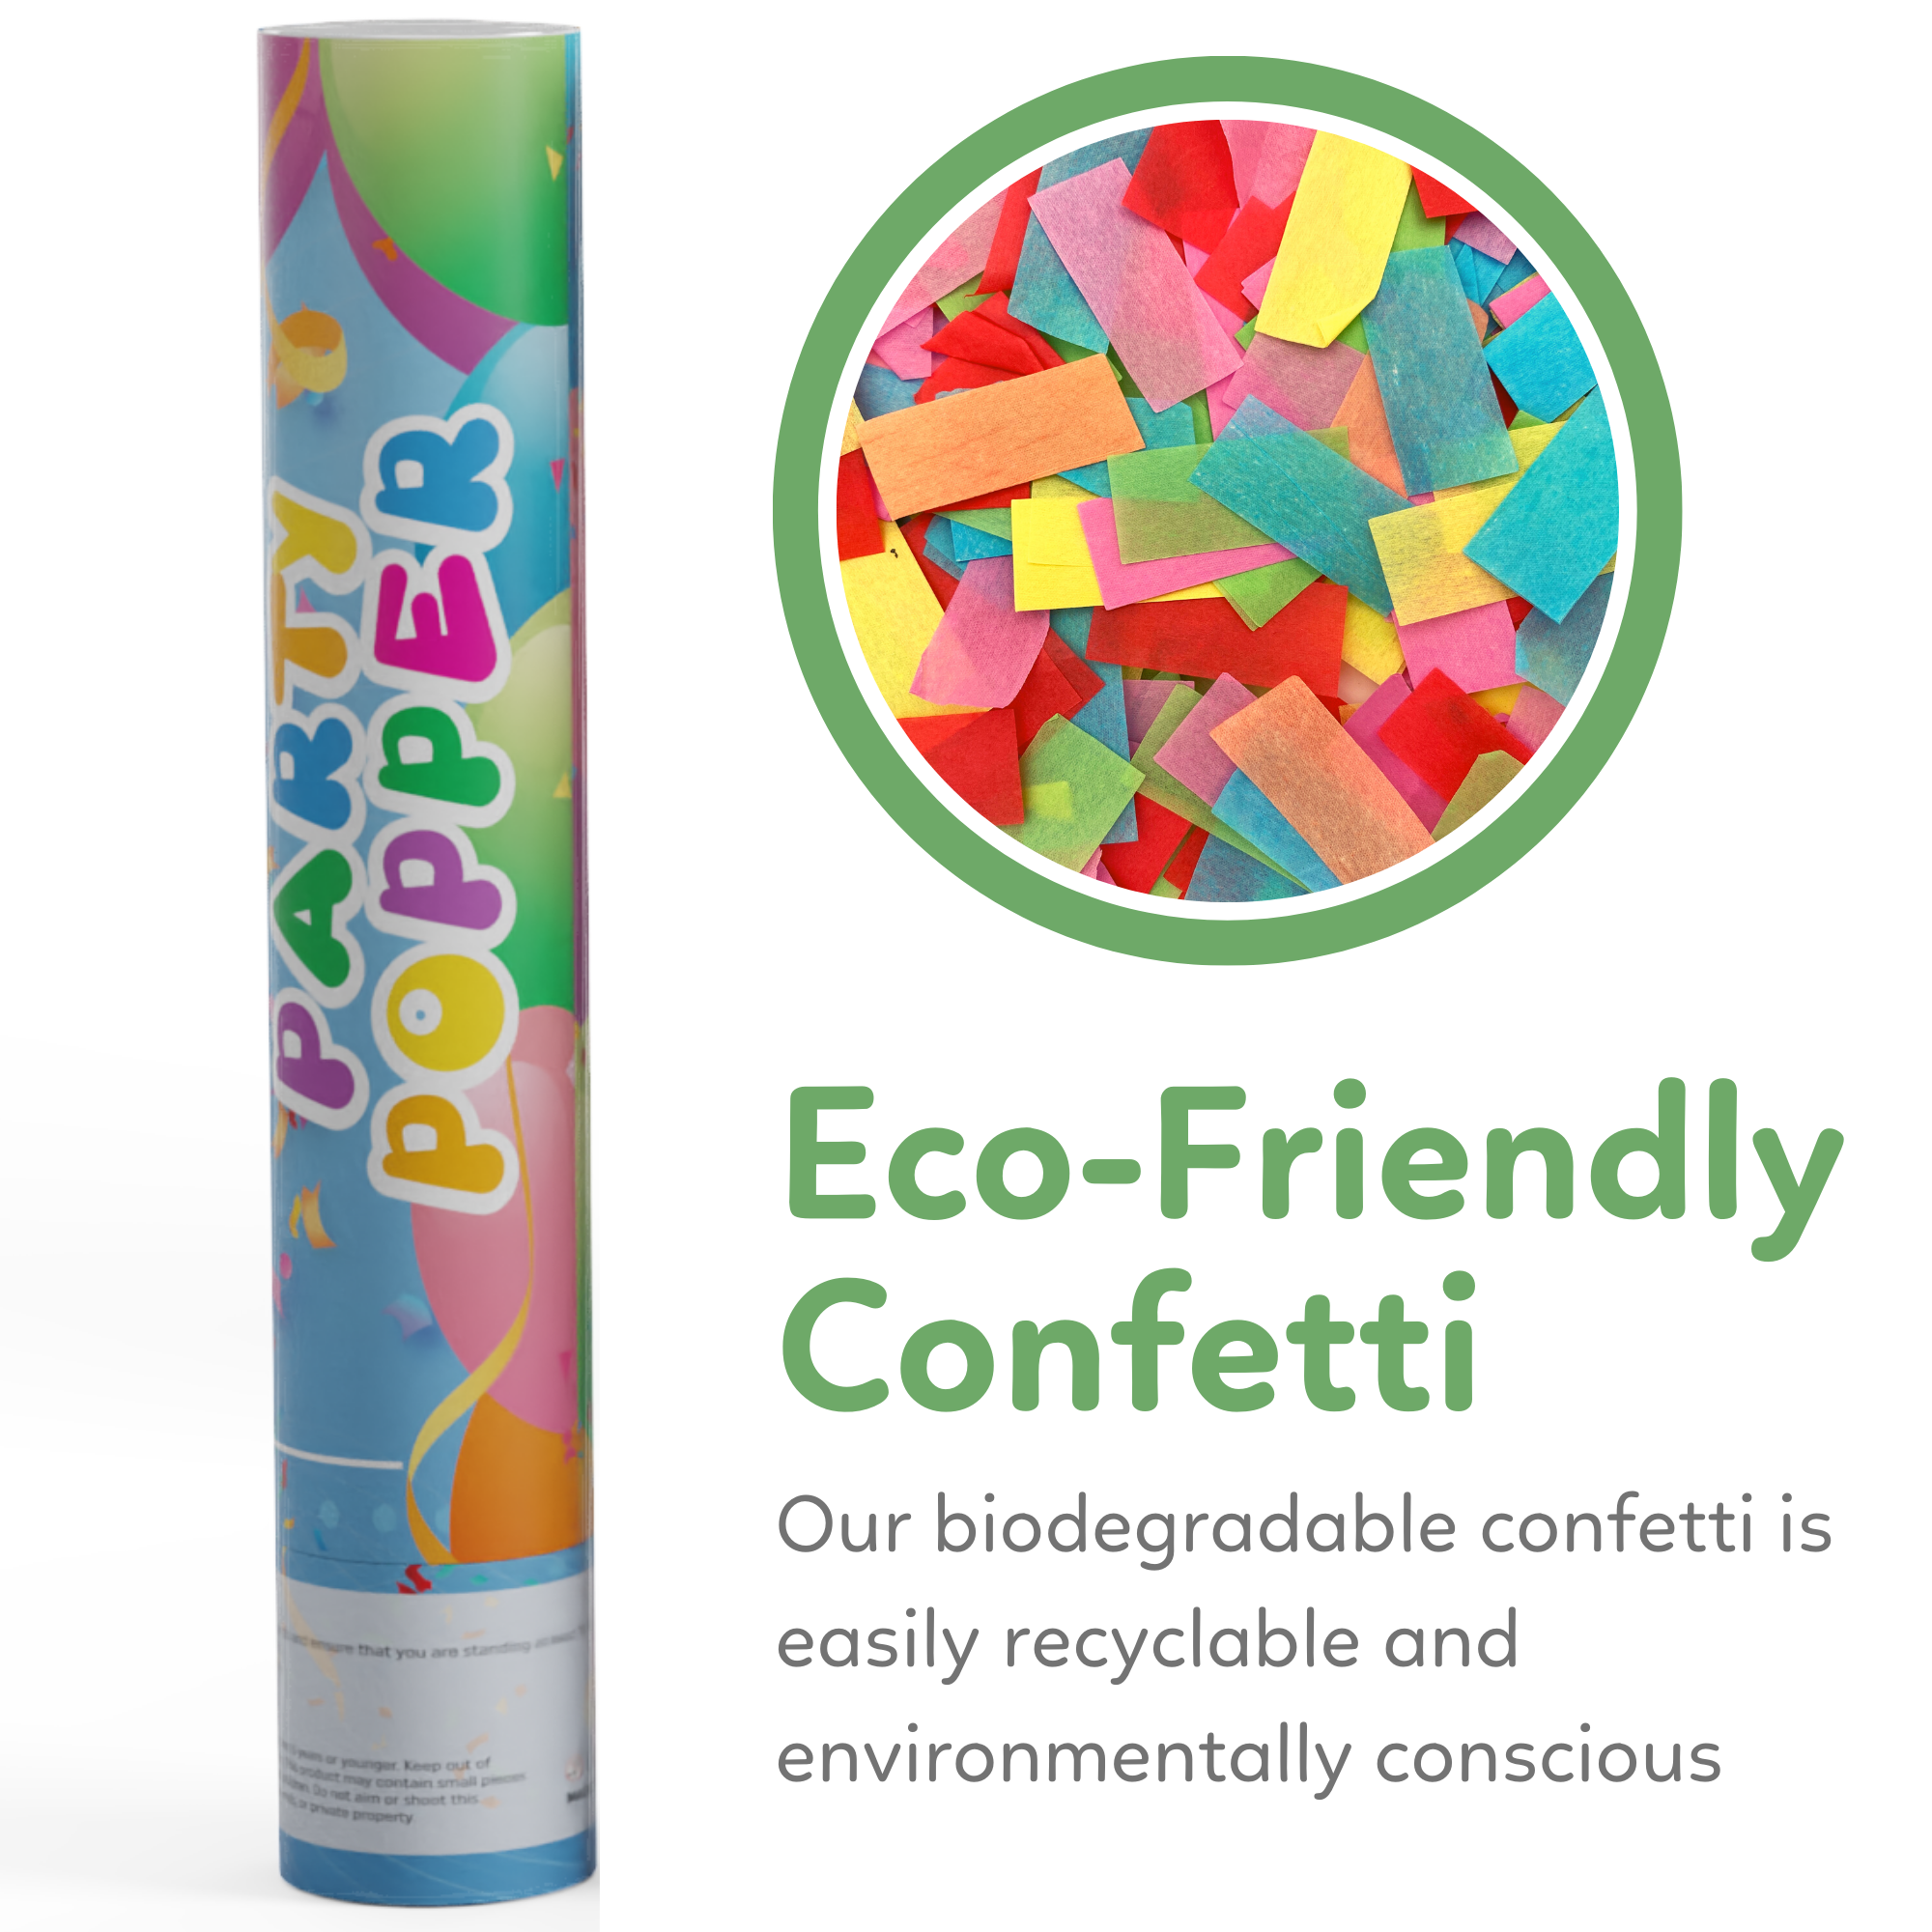 Biodegradable Confetti Bright Rainbow Confetti Mix Perfect for